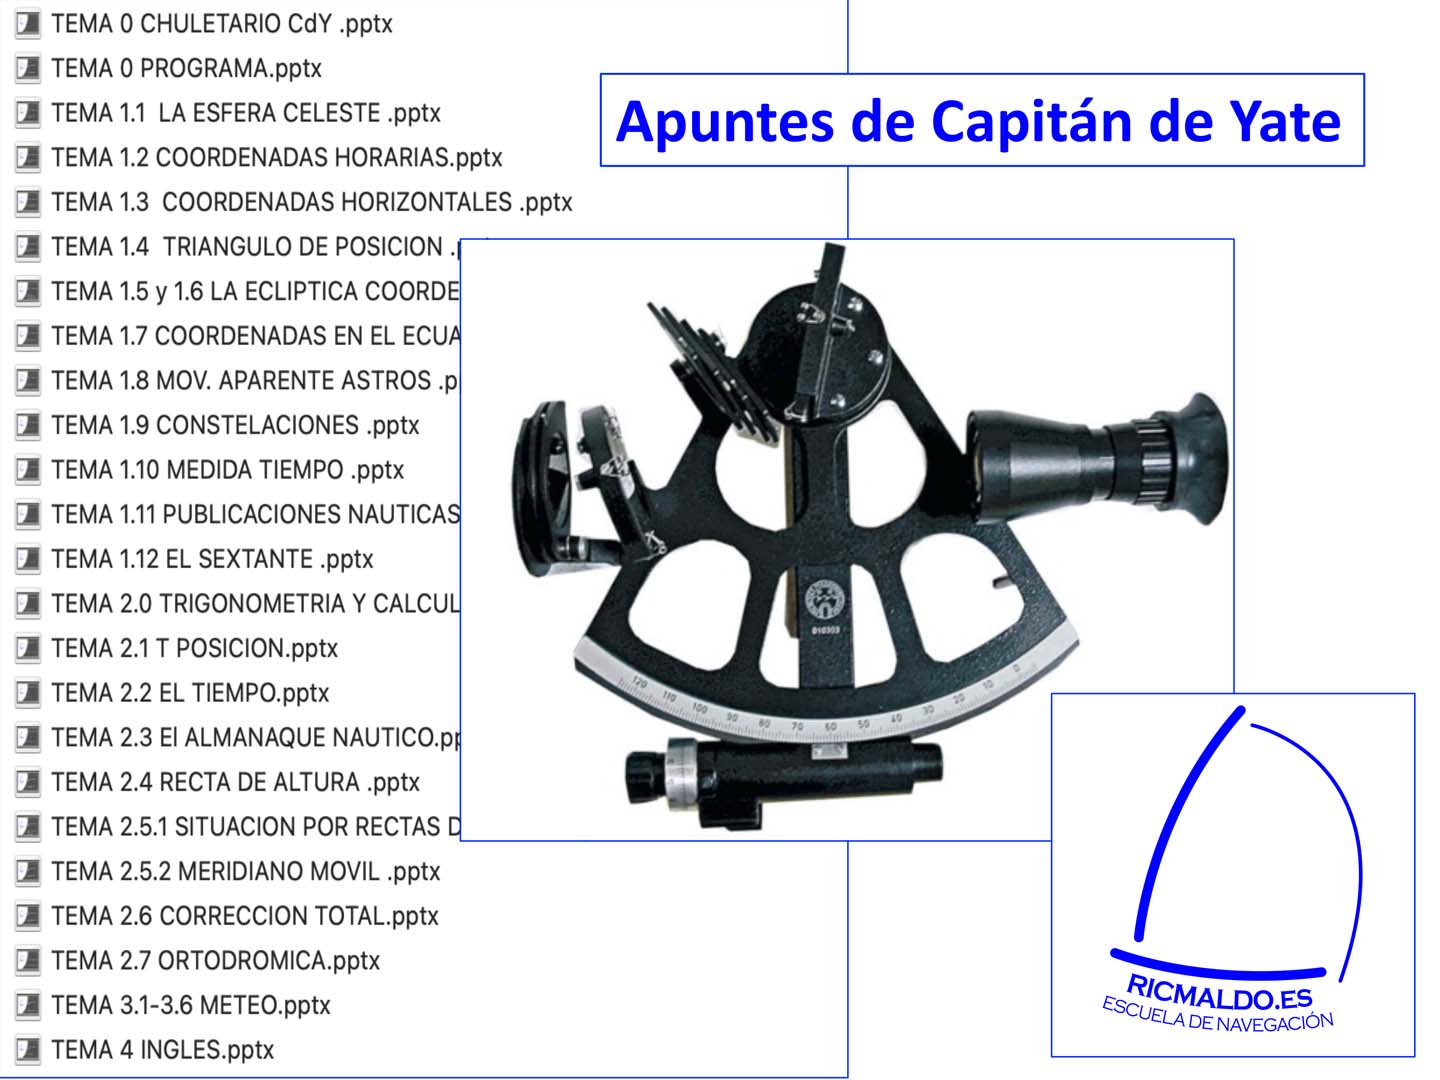 Foto de los apuntes de capitán de yate con los diferentes temas